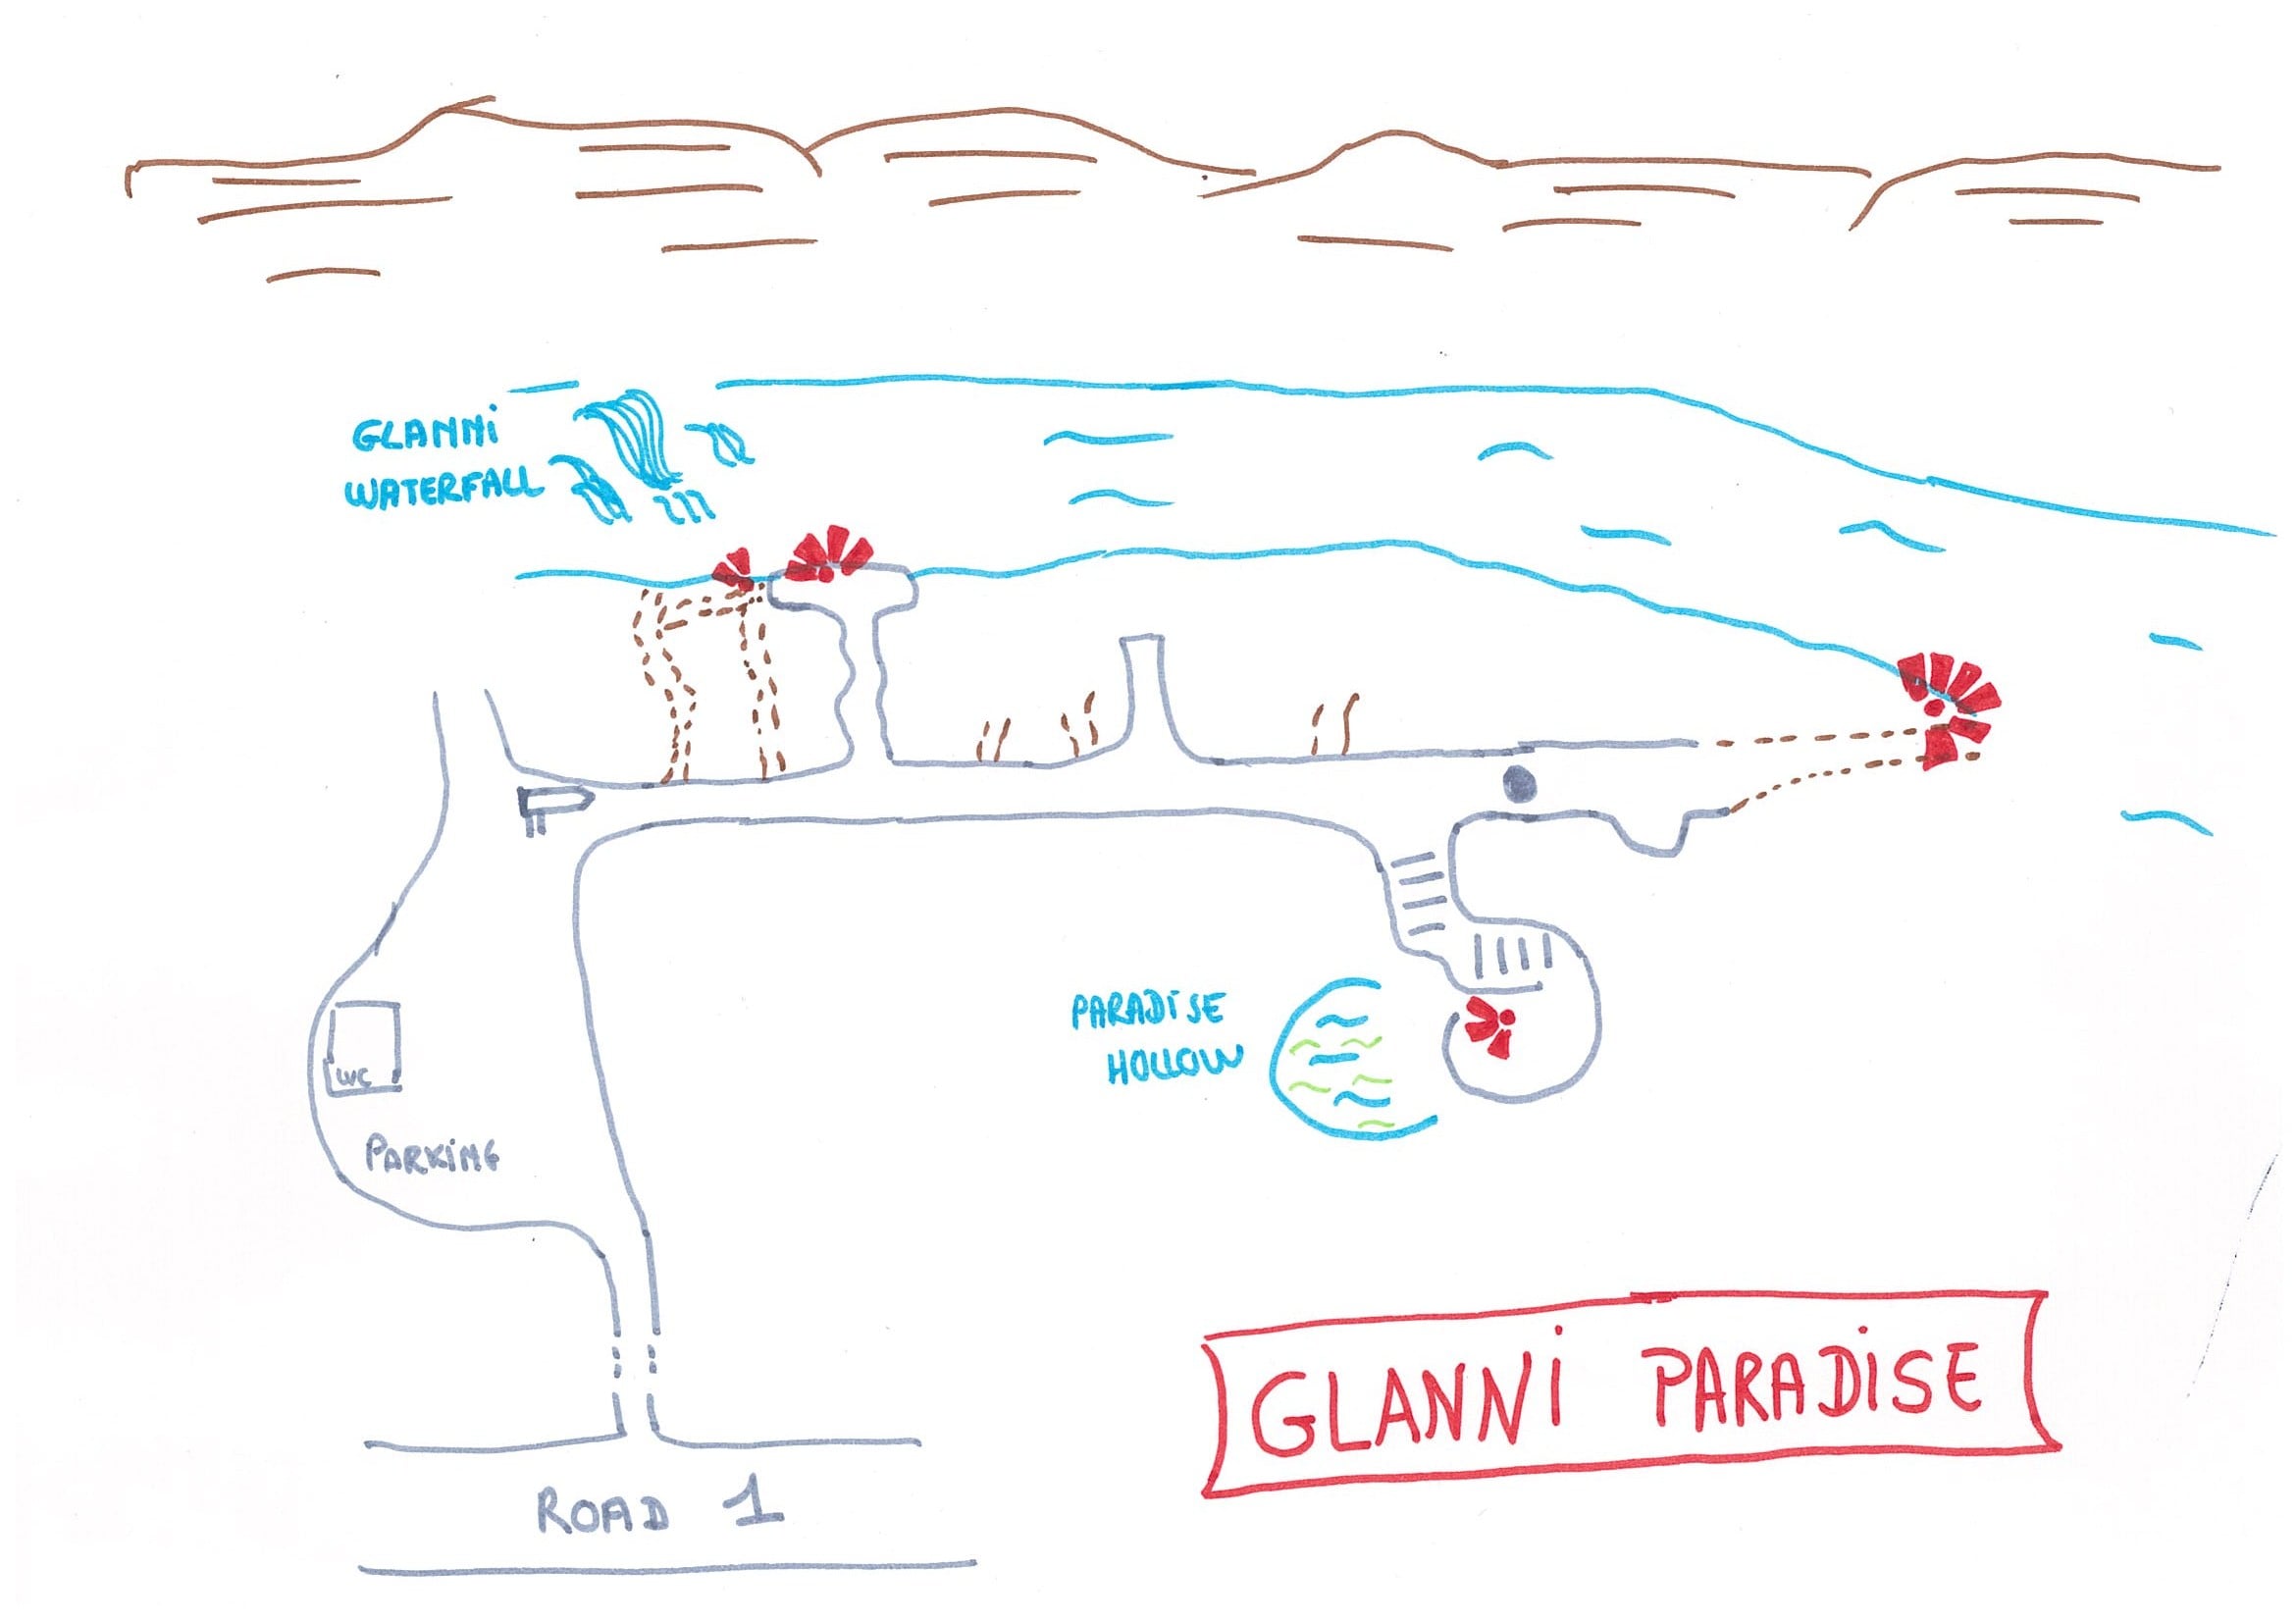 Map Glanni Paradise iceland